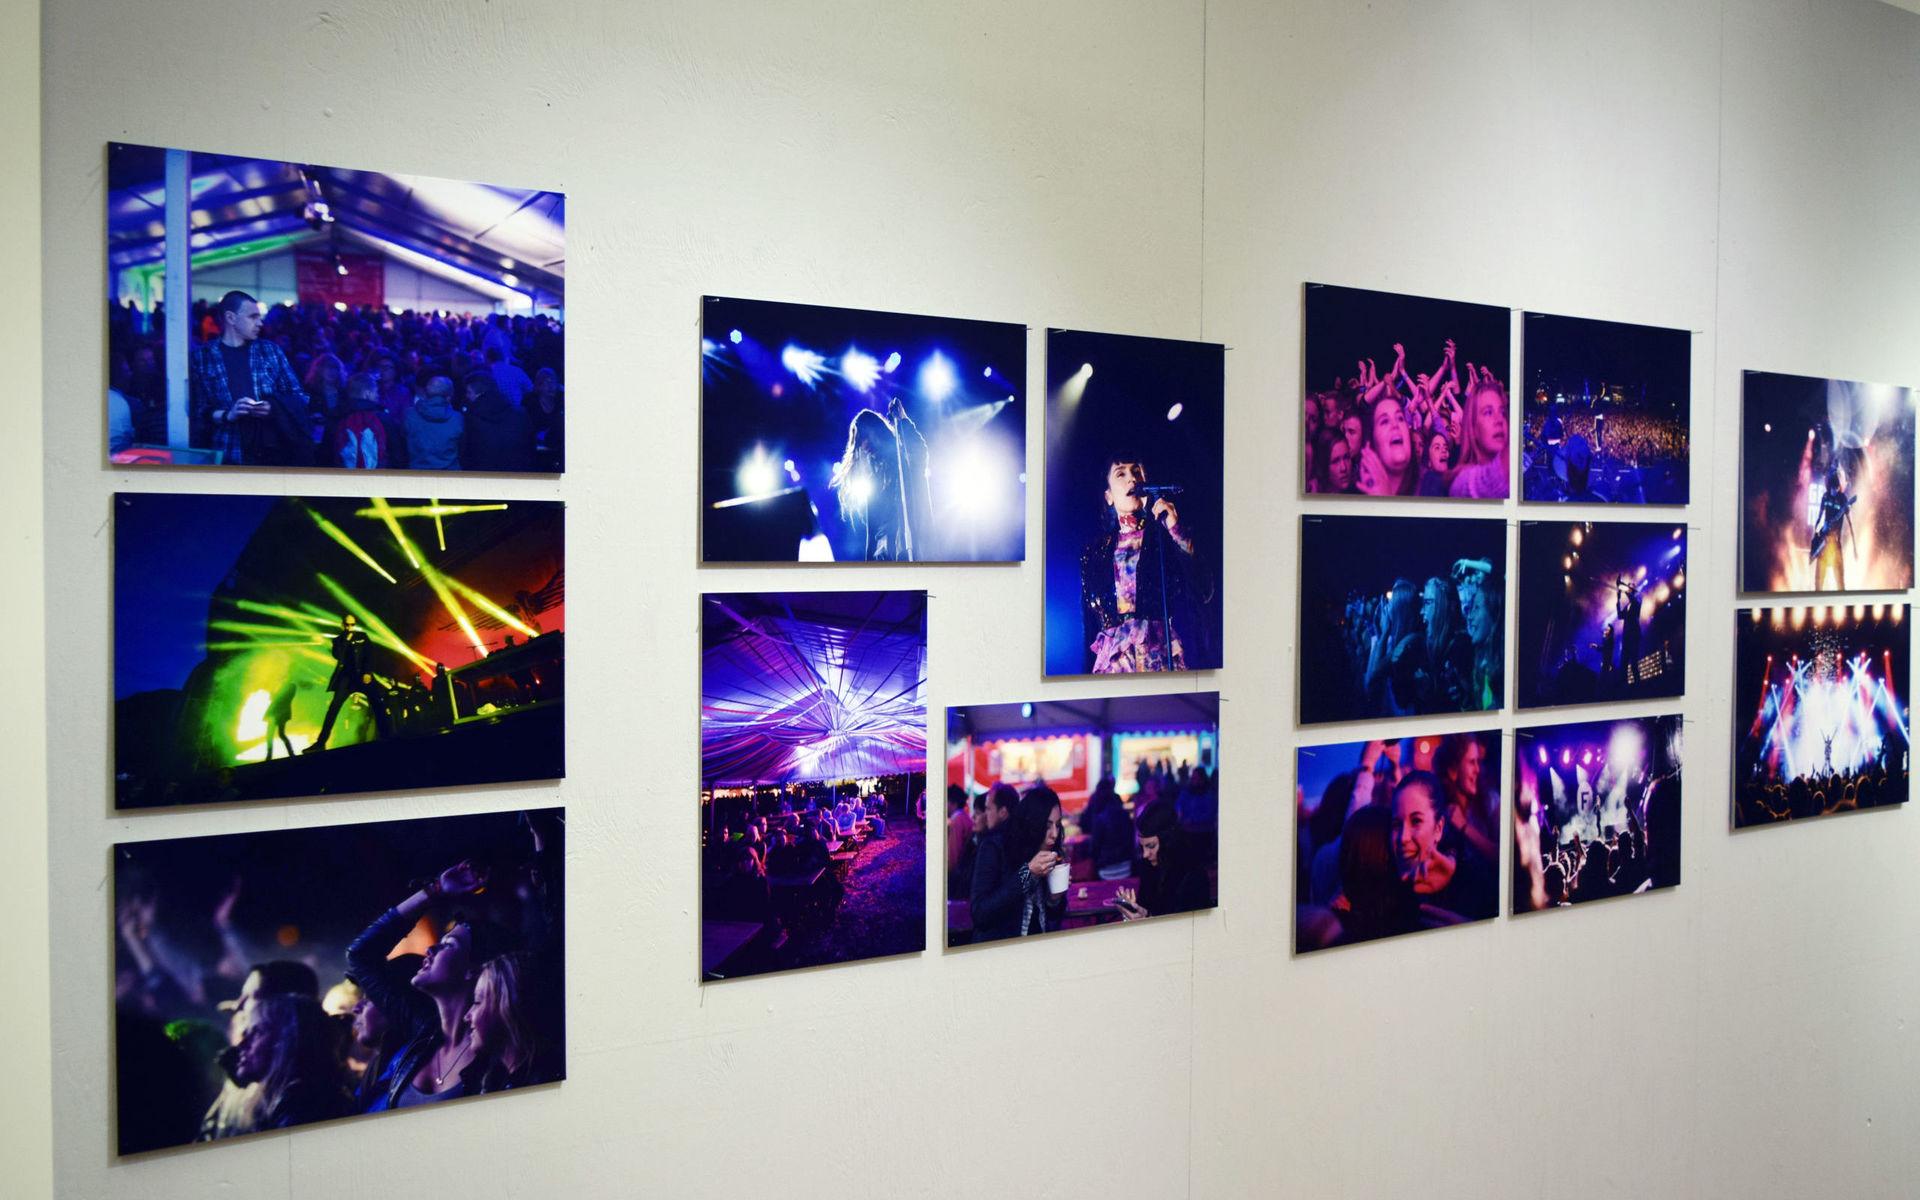 En hel vägg med bilder av David Scherman från Solid Sound visas på utställningen. 